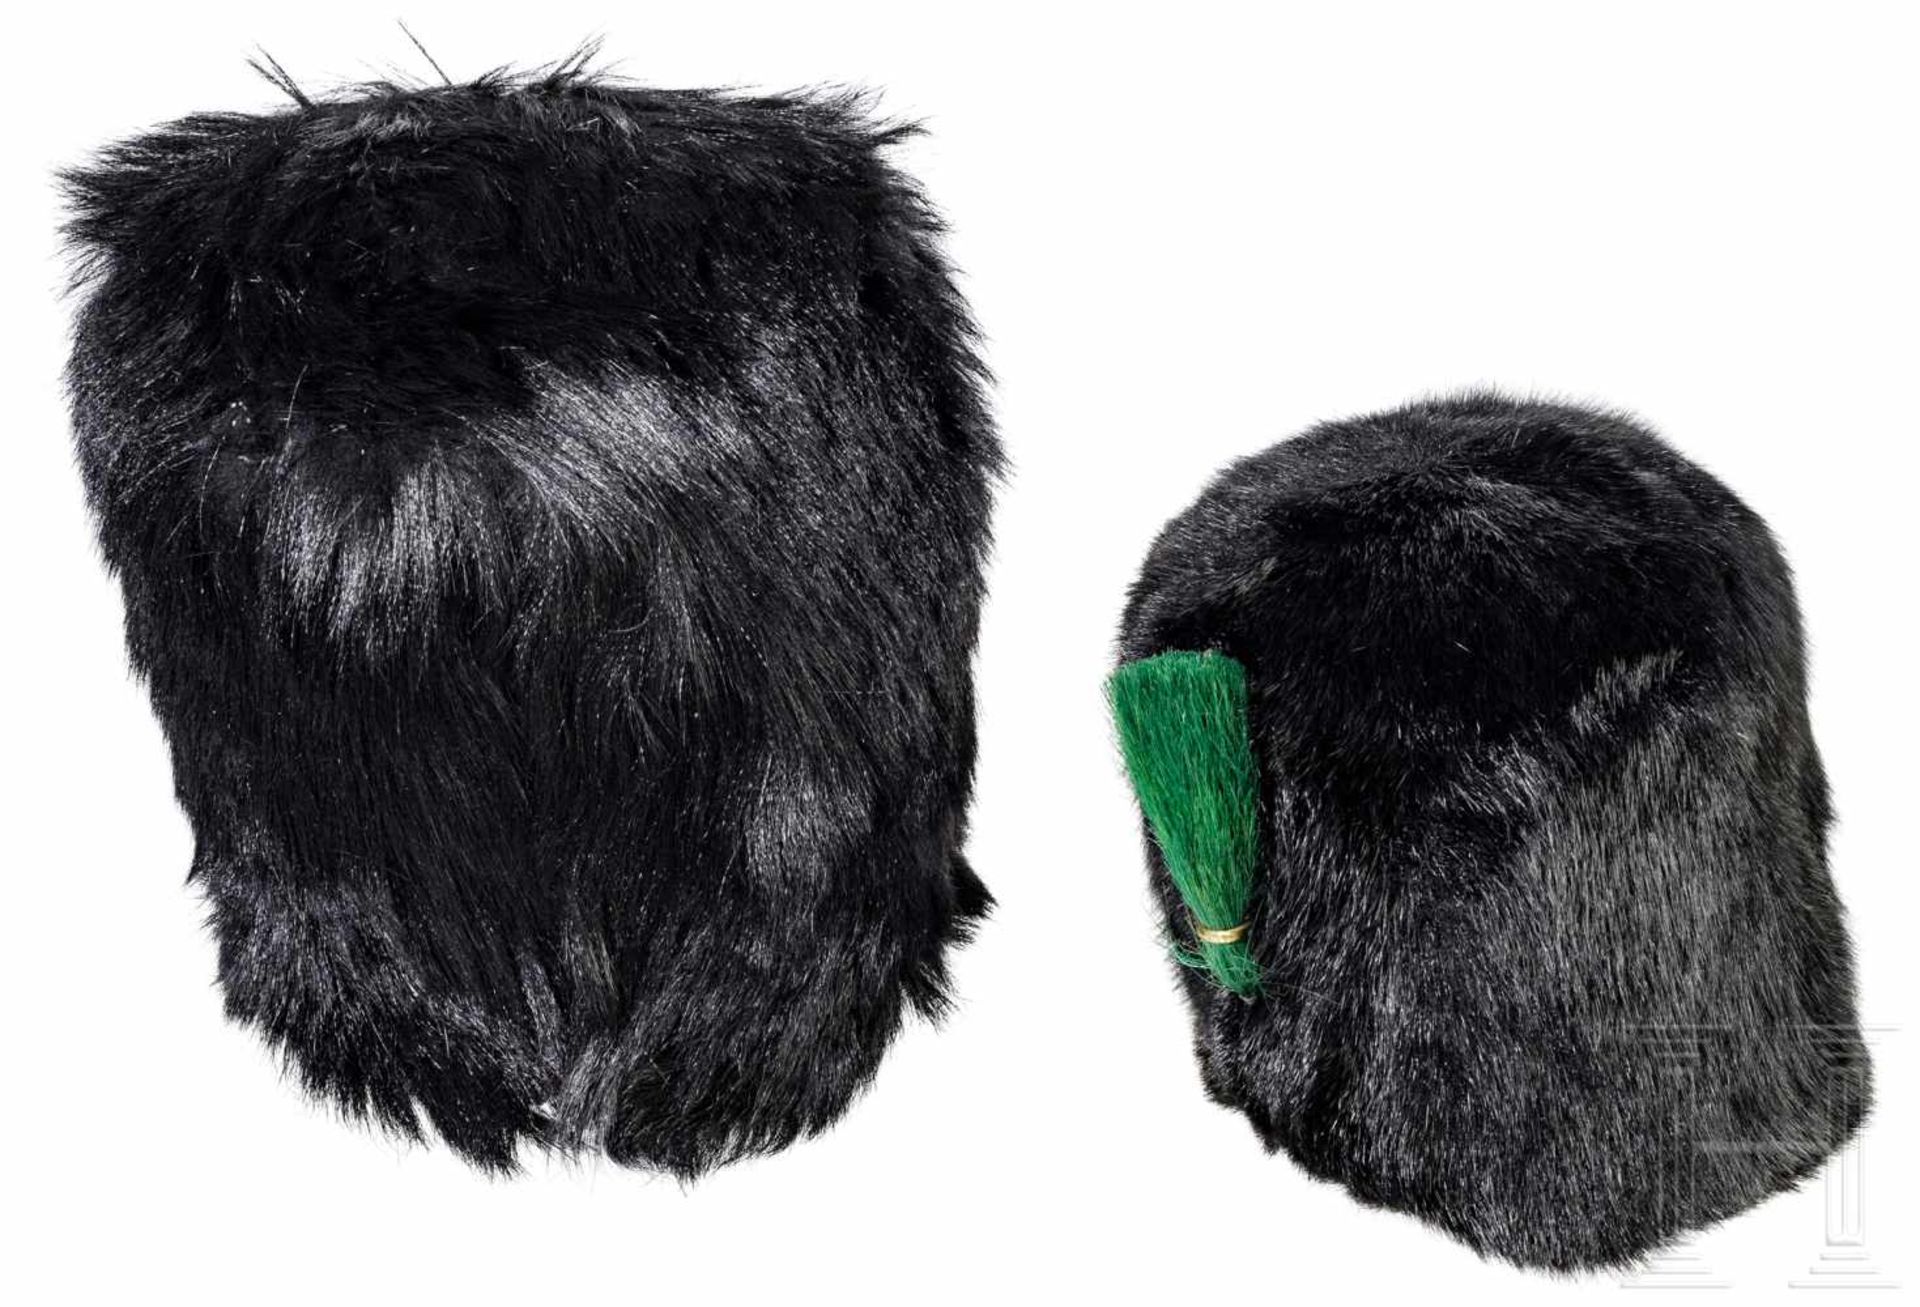 Two fur caps of the English Guard (Queen's Guard)Zwei Bärenfellmützen der englischen Garde, eine